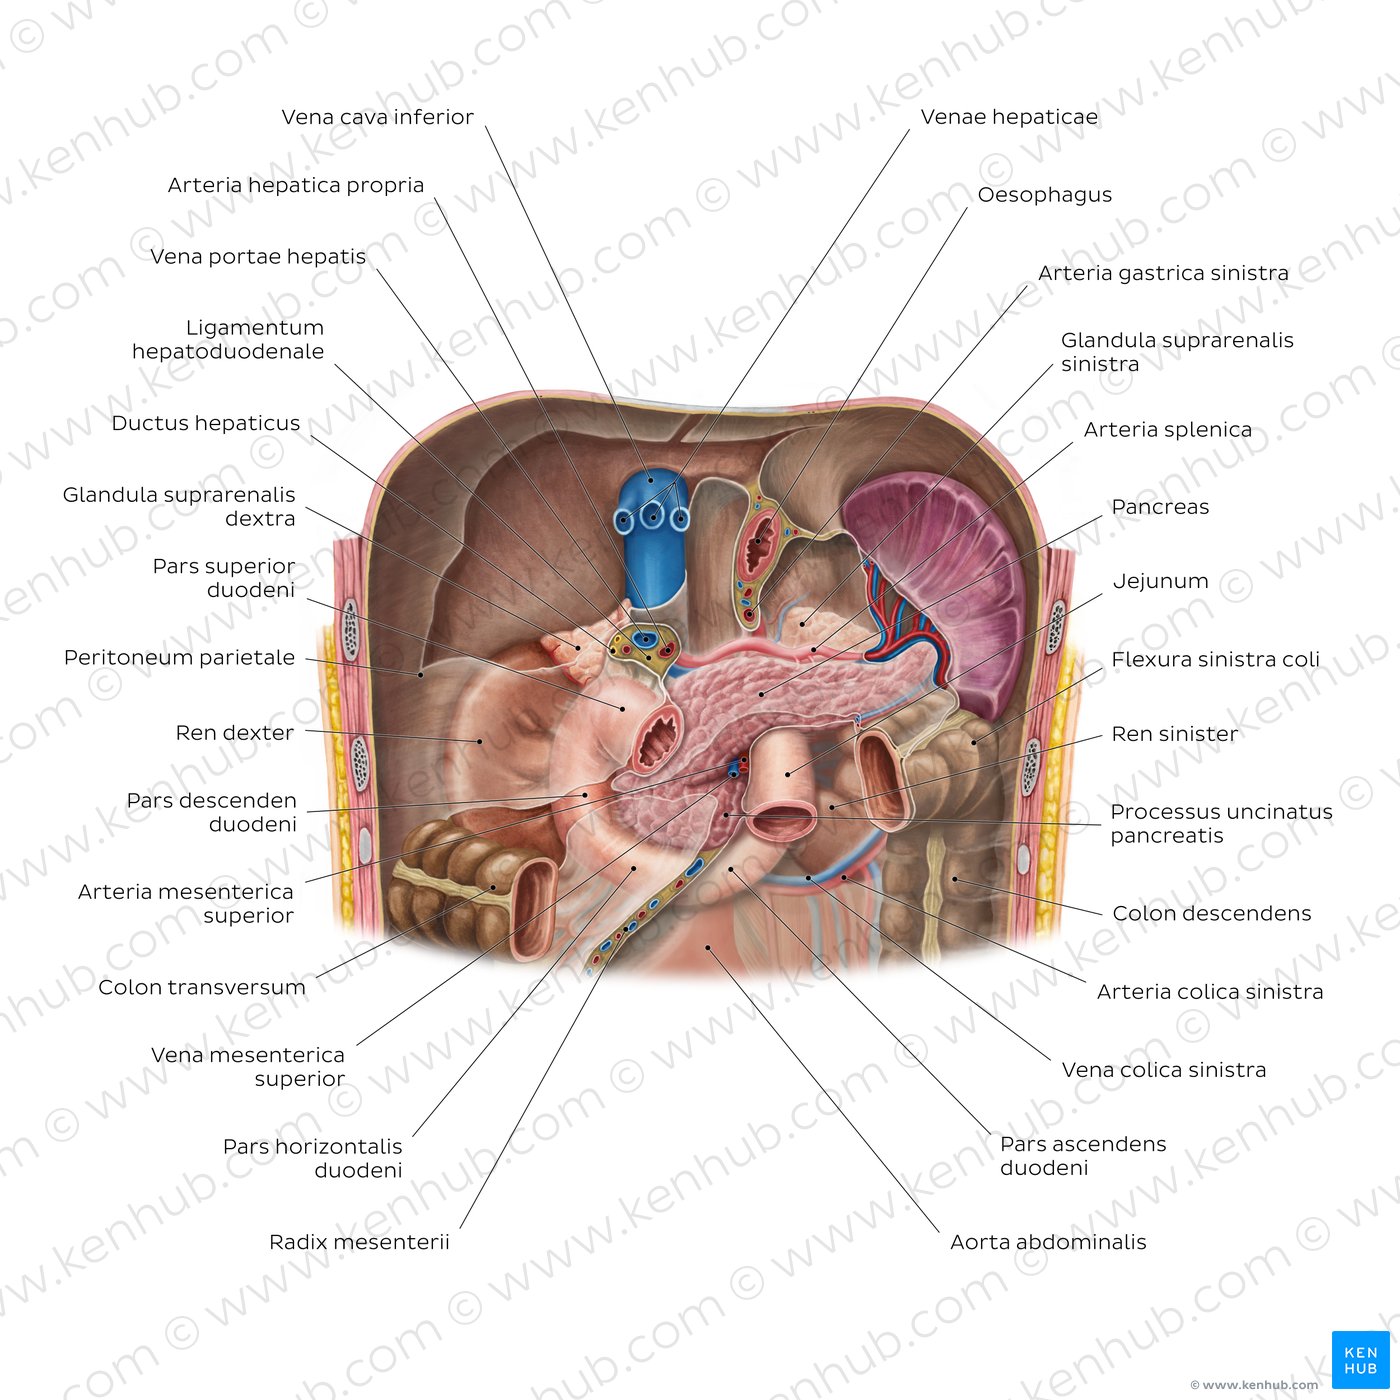 Nieren in situ und benachbarte Organe